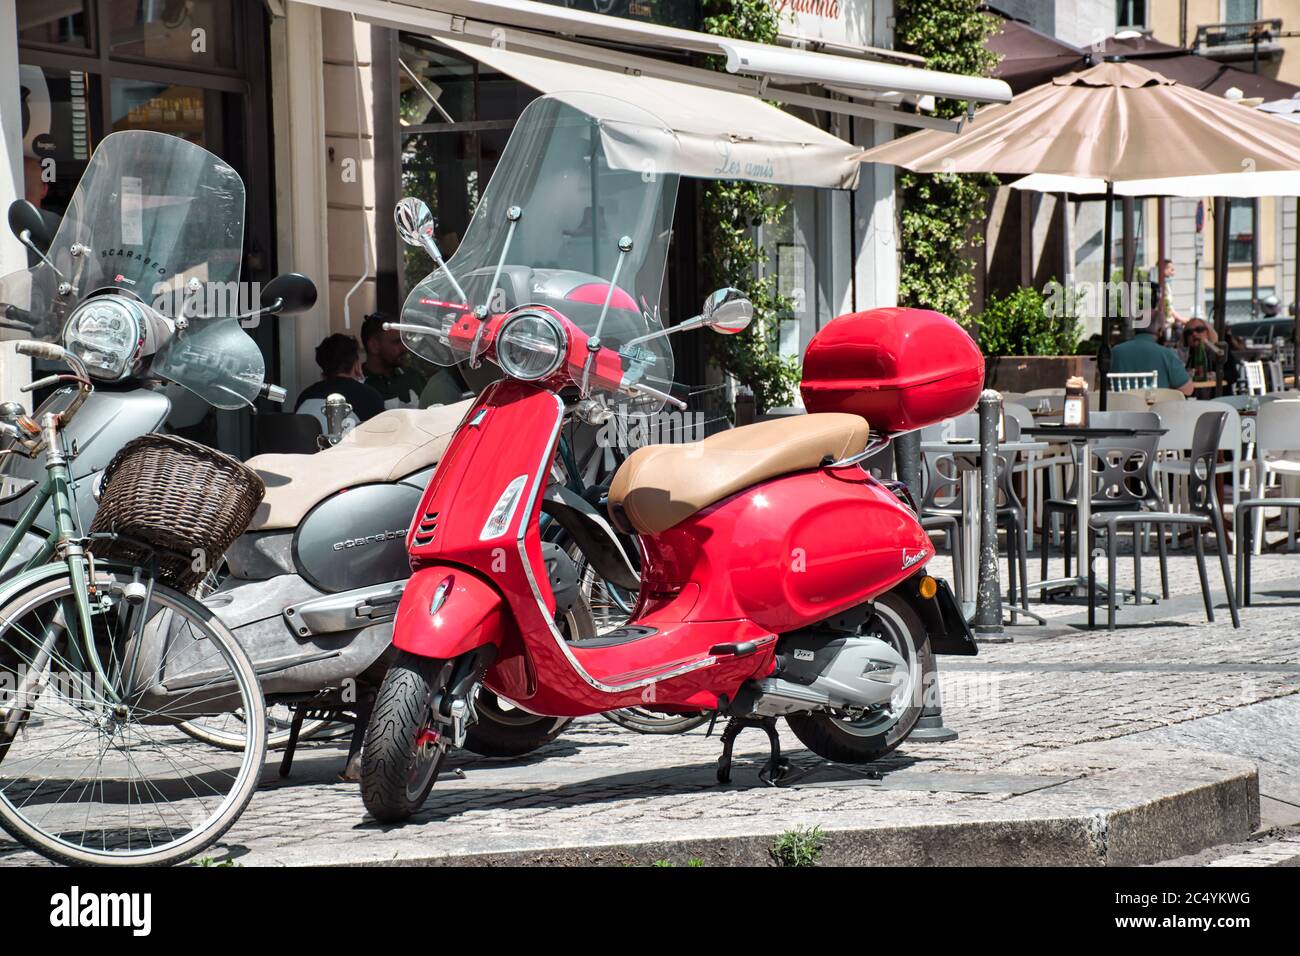 Milan, Italie 06.29.2020: Une vue de rue milanaise ordinaire avec un  triporteur rouge Piaggio Vespa Photo Stock - Alamy